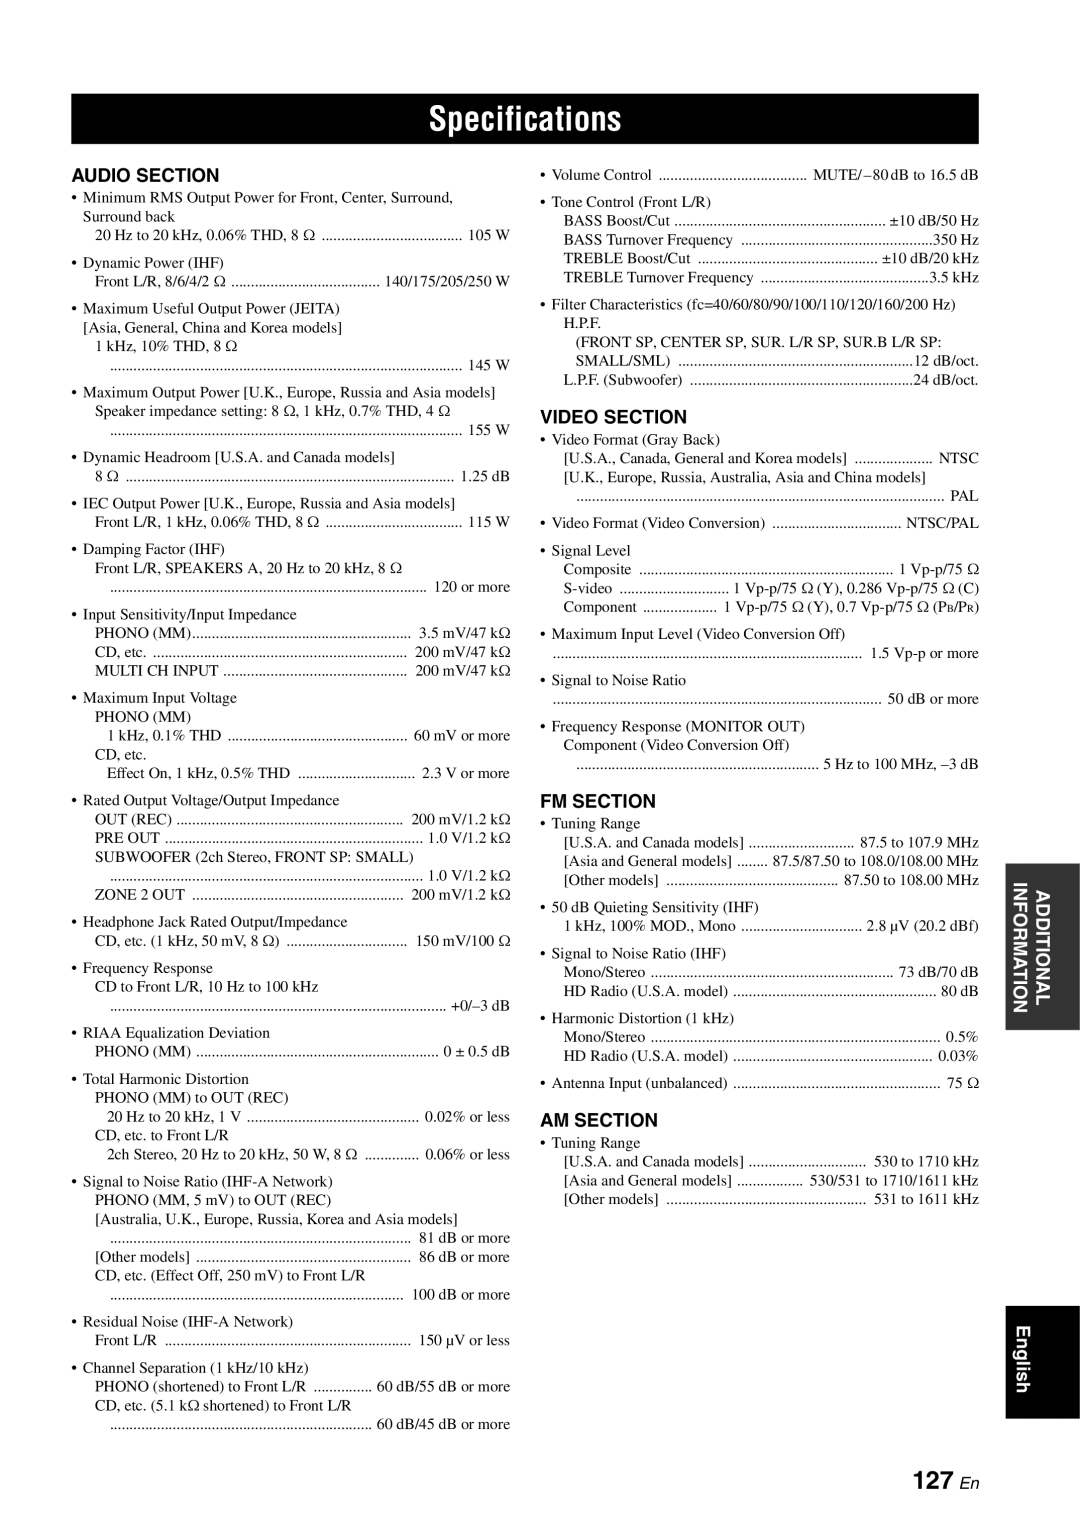 Yamaha RX-V863 owner manual Specifications, 127 En 